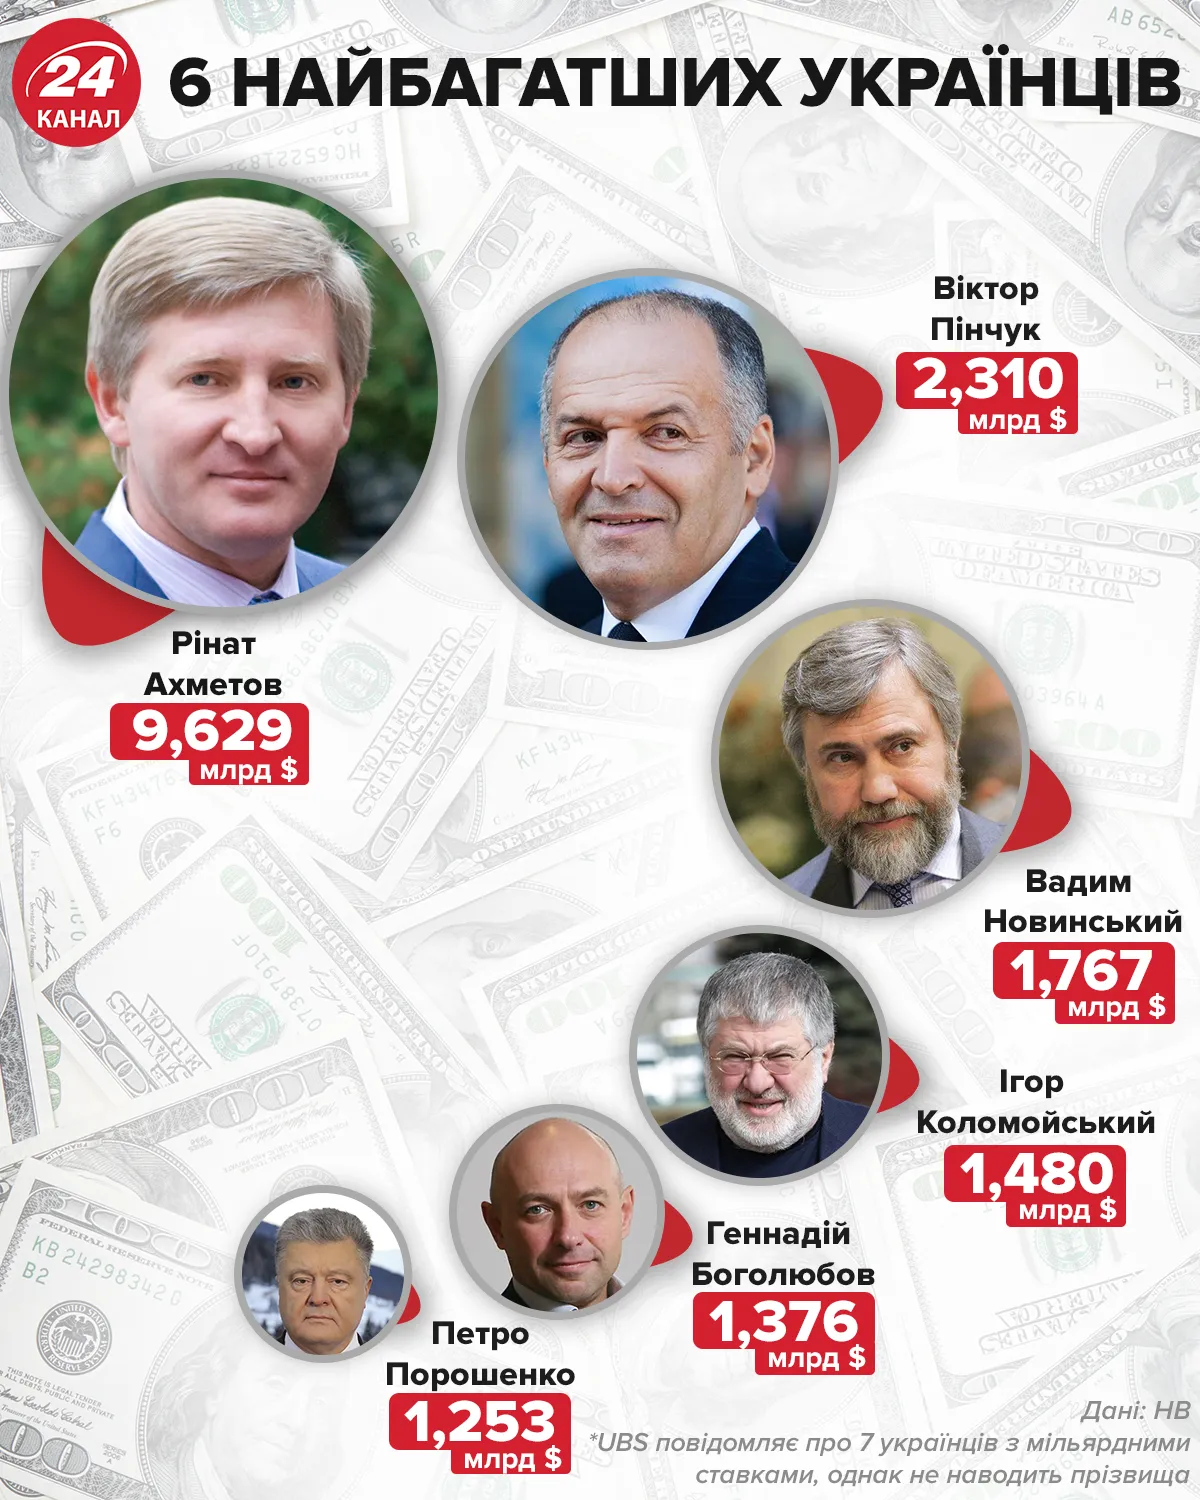 Найбагатші українці